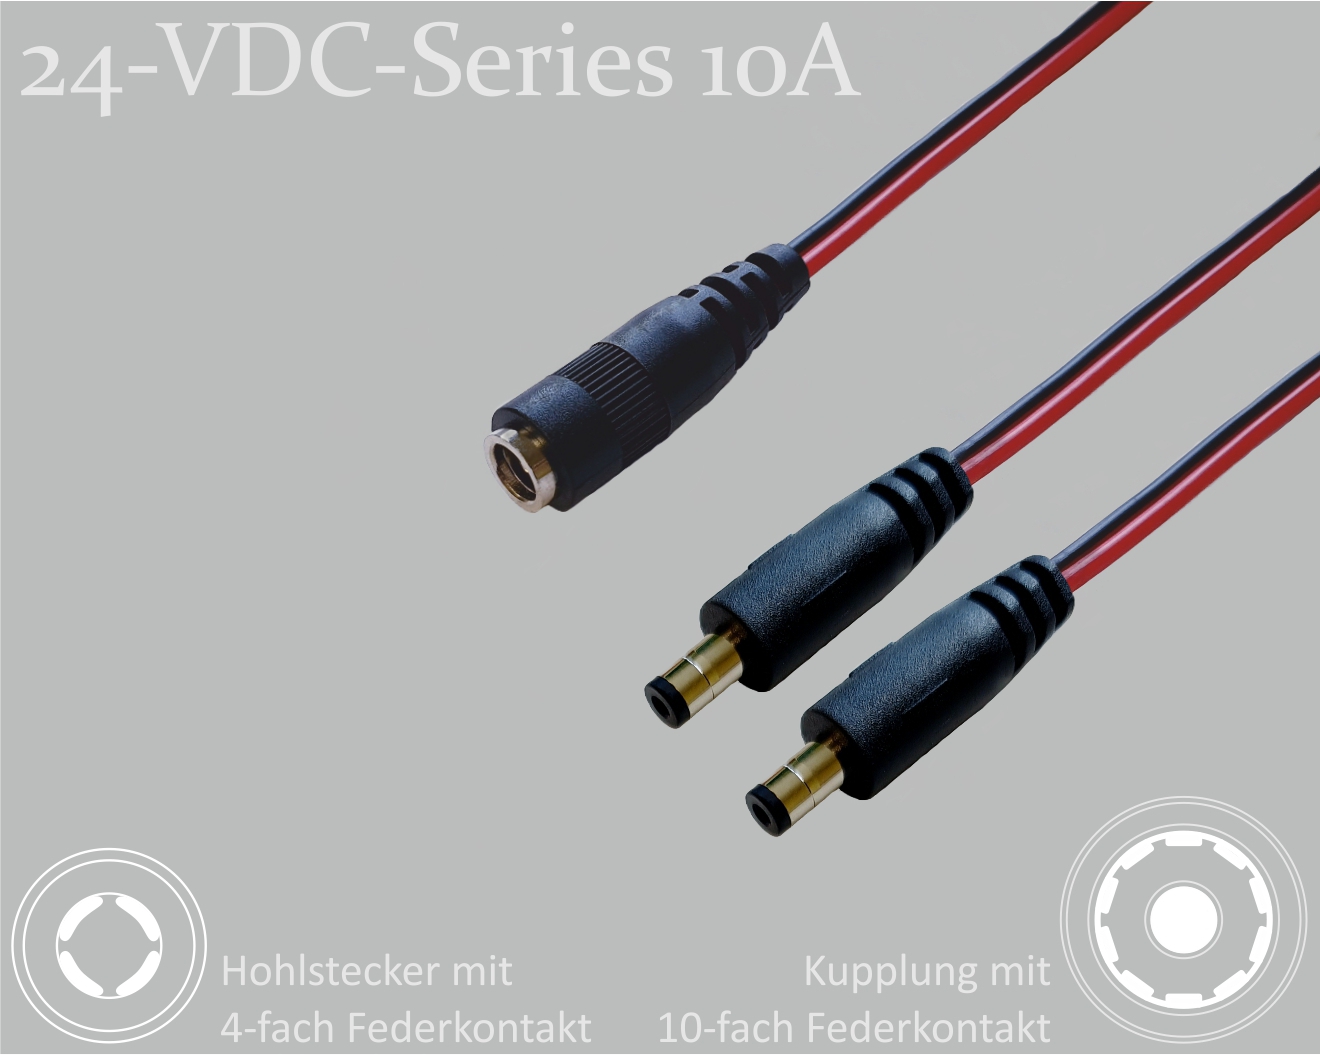 24-VDC-Series 10A, DC-Verteiler 1x DC-Kupplung mit 10-Federkontakt auf 2x DC-Stecker mit 4-Federkontakt,  2,1x5,5mm, Flachkabel 2x0,75mm², rot/schwarz, 0,3m